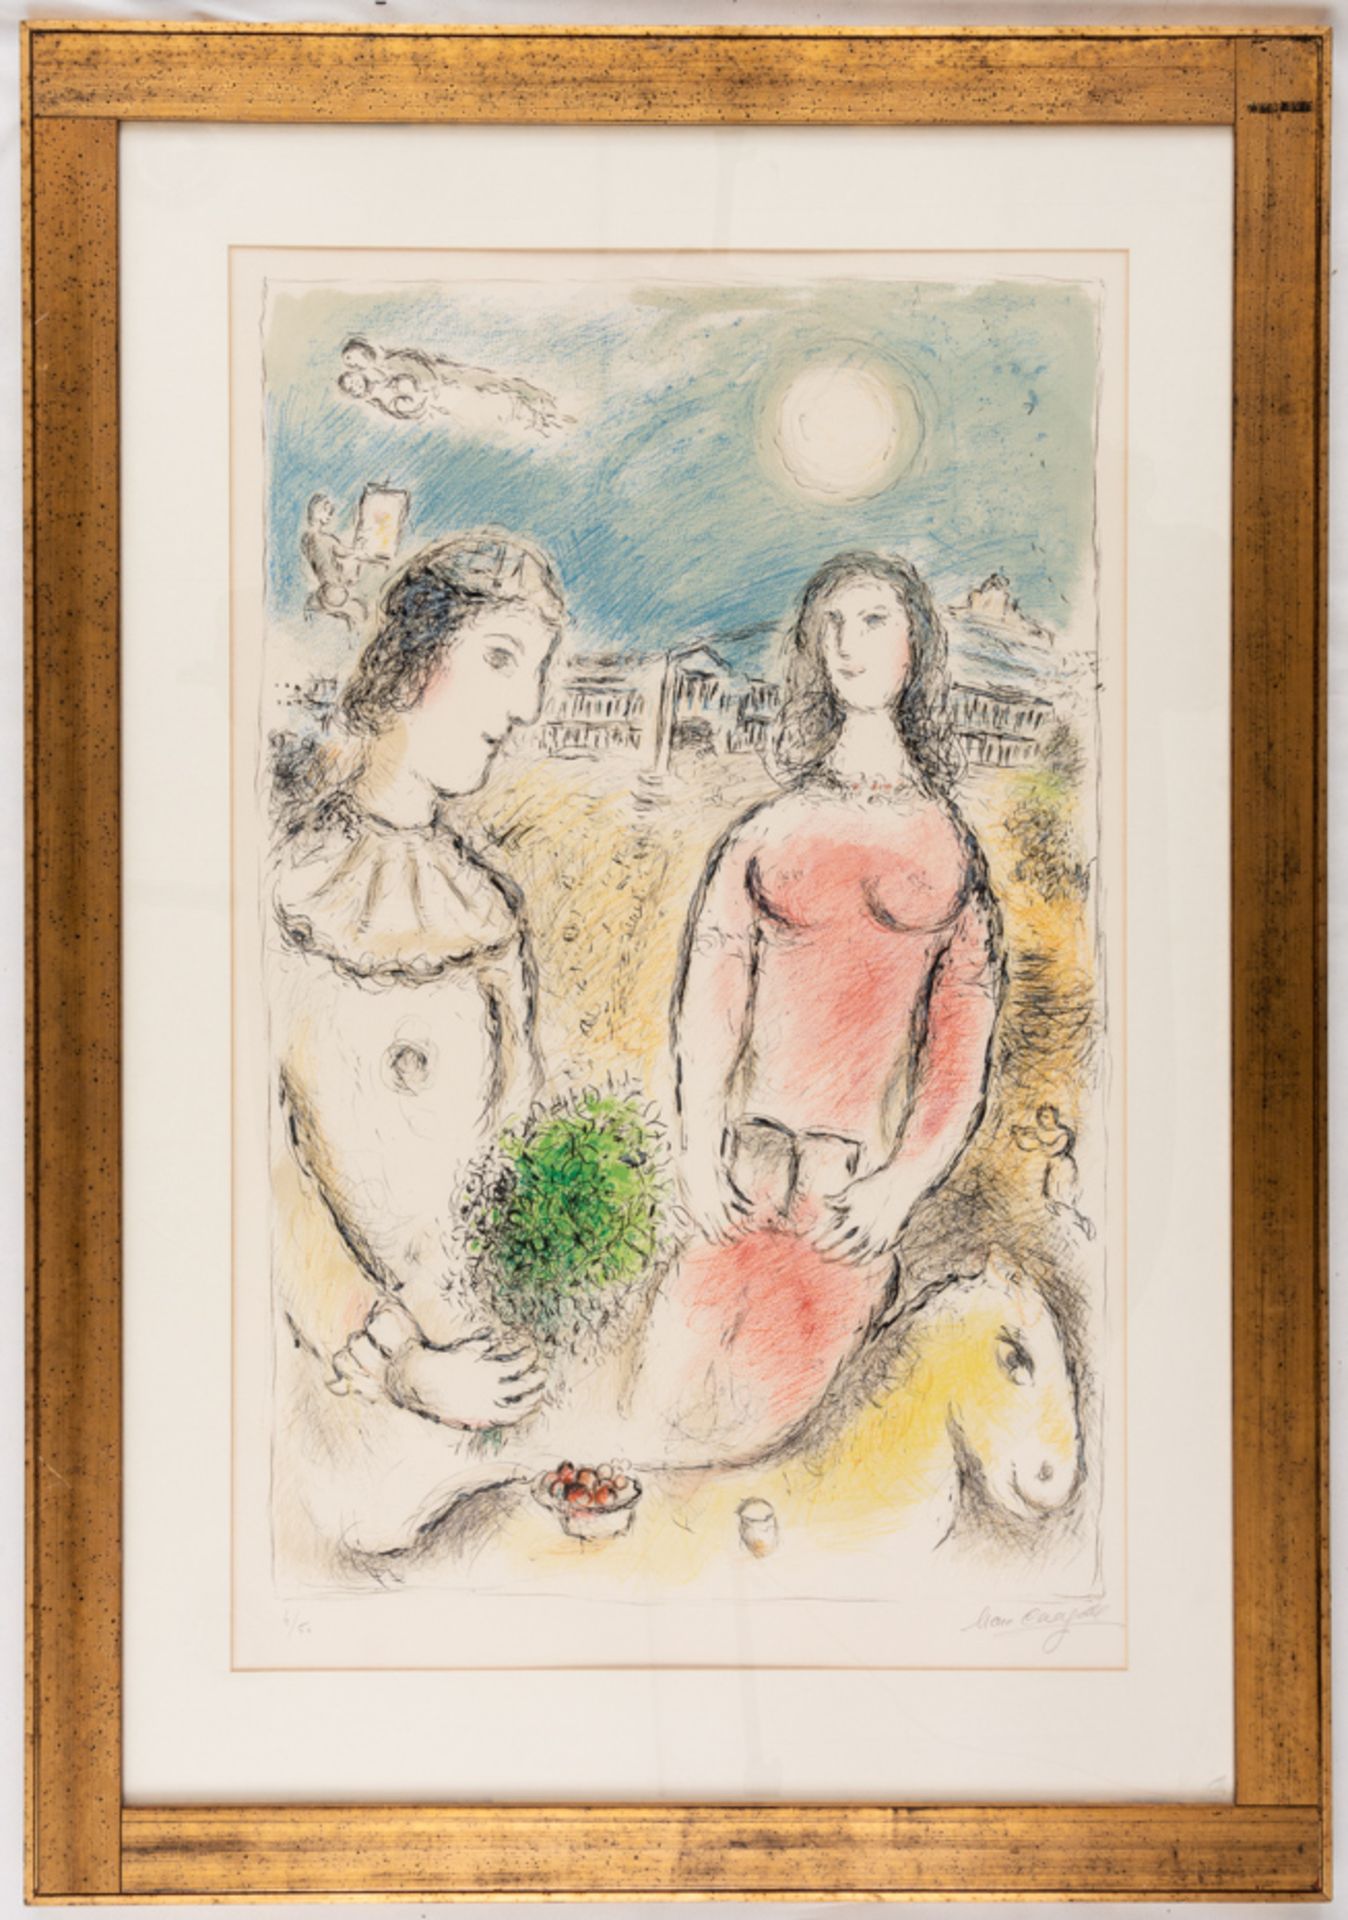 Marc CHAGALL (1887-1985), Le couple au crépuscule, sehr grosse Farblithographie, signiert - Bild 3 aus 3